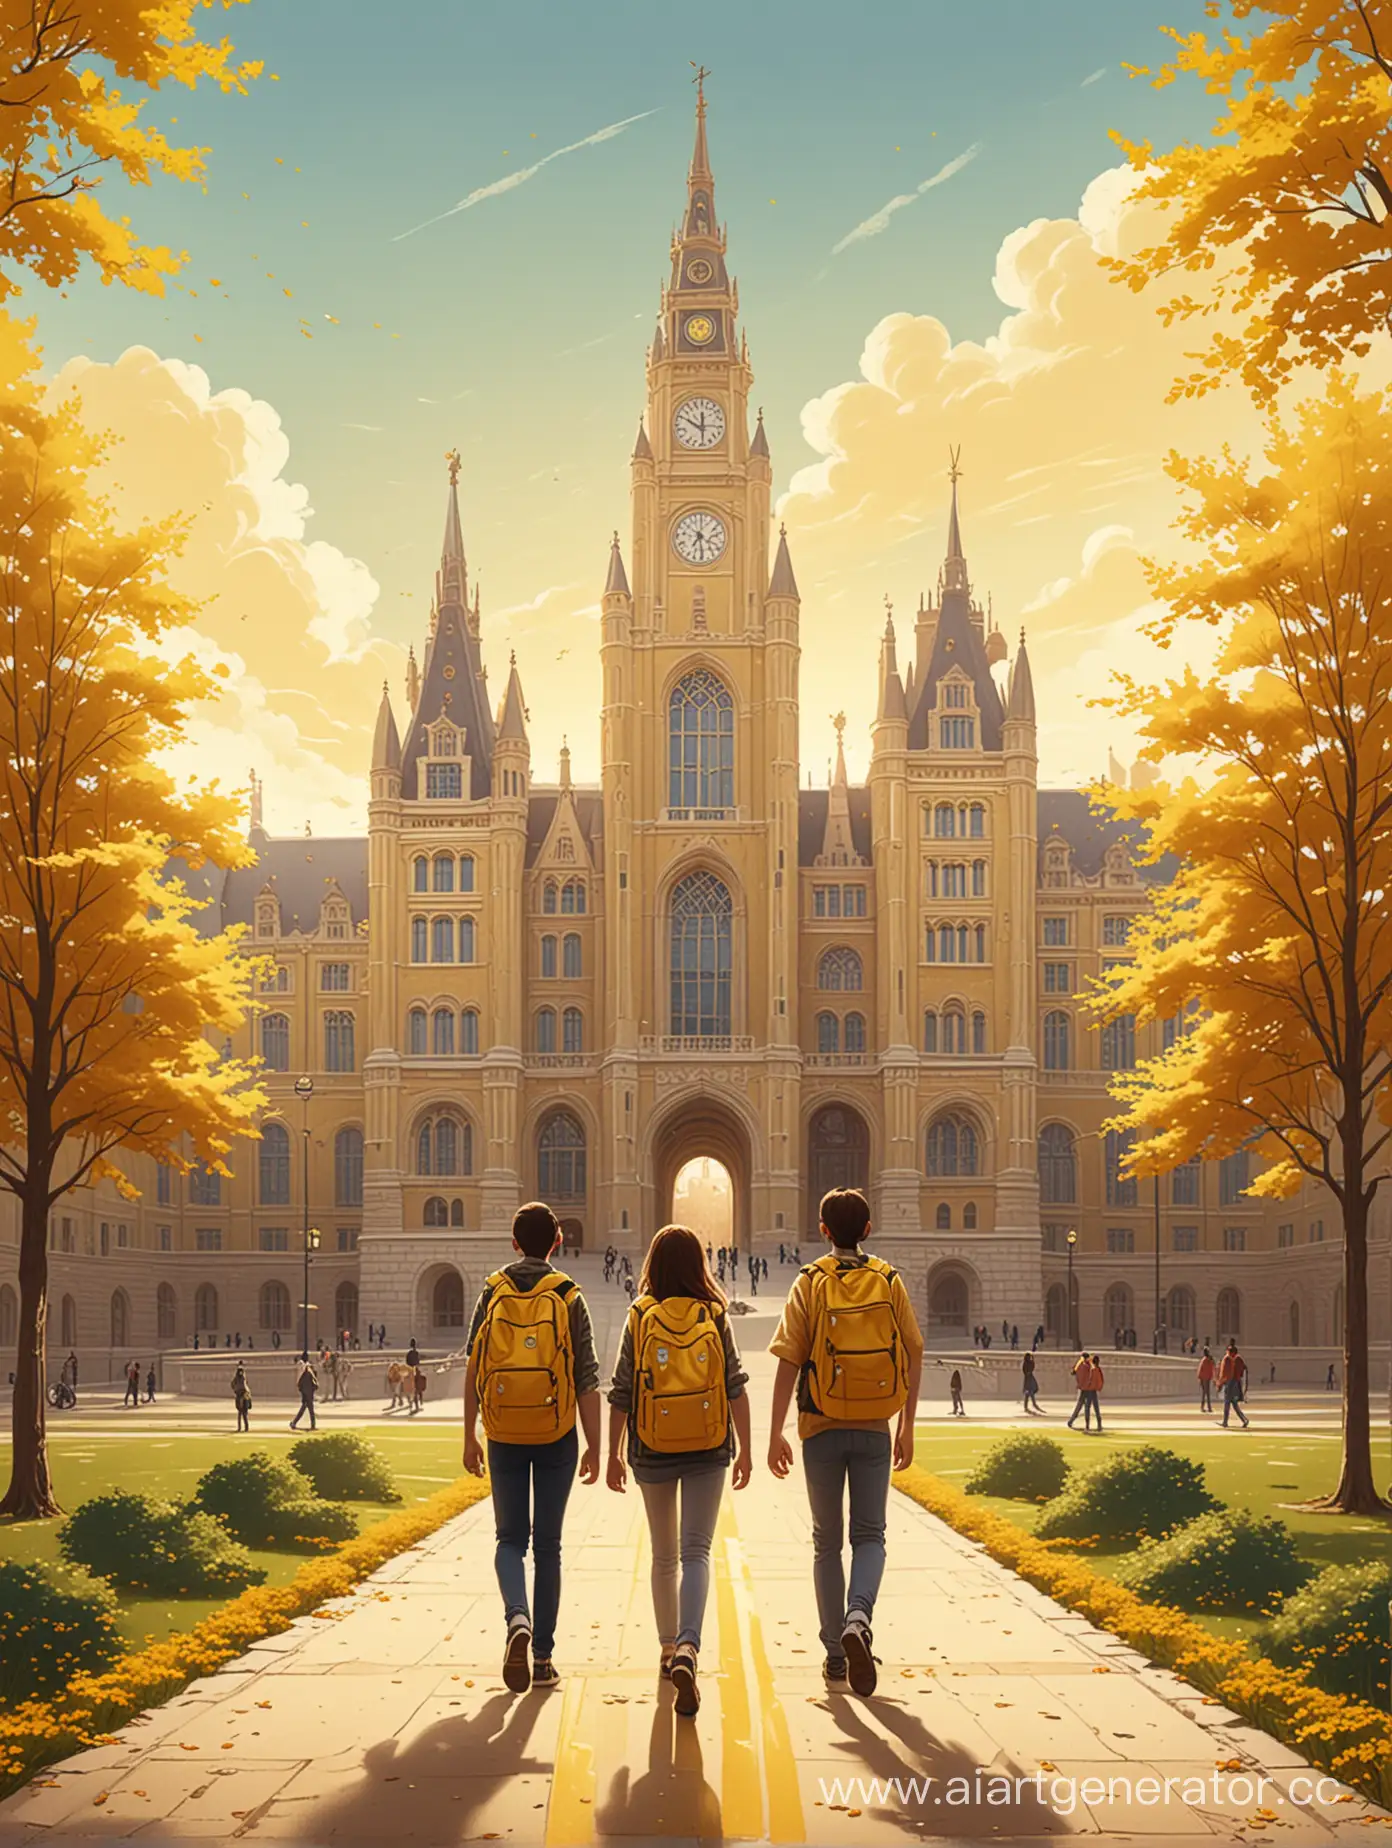 Два студента - парень и девушка стоят к нам спиной и смотрят на гигантское здание университета, к которому ведет желтая тропа. У них за спиной рюкзаки. Изображение в стиле иллюстрации, сделанной в иллюстраторе